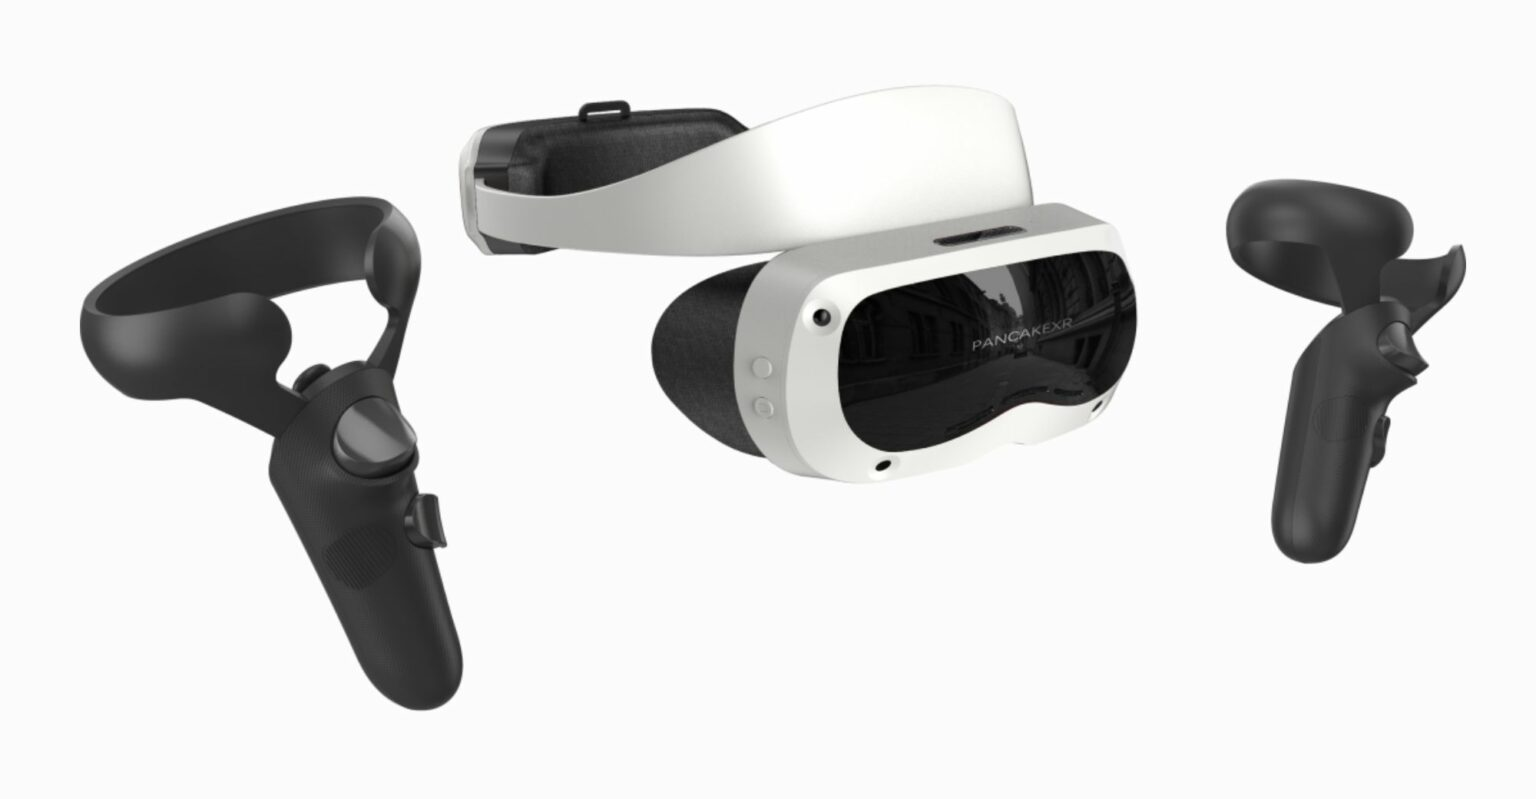 Skyworth VR lance la marque PANCAKEXR et de nouveaux produits VR